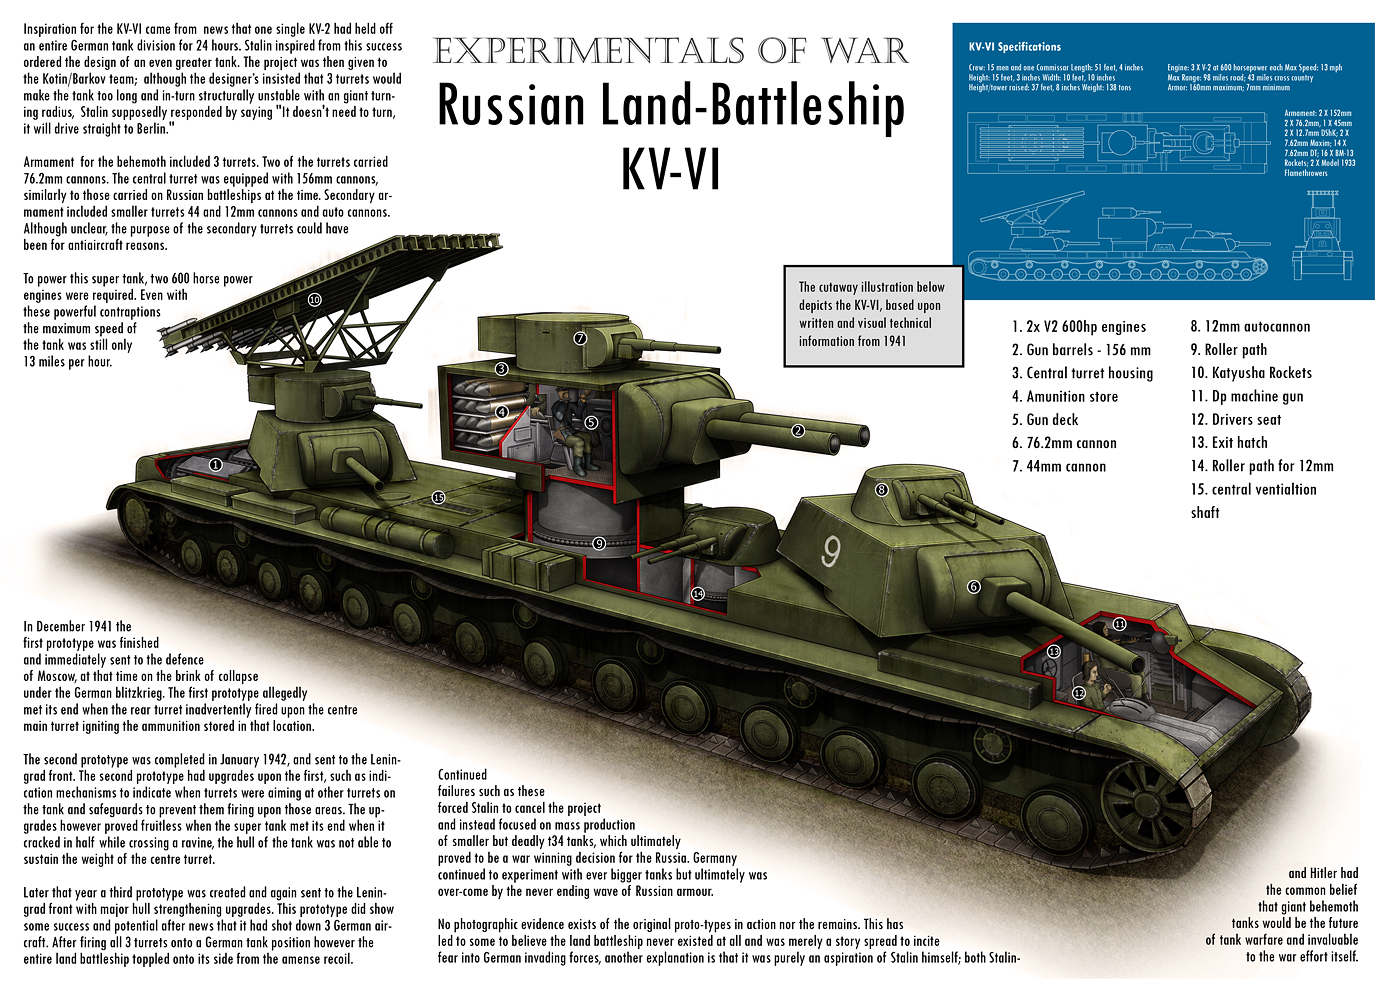 KV-6 Behemoth. 